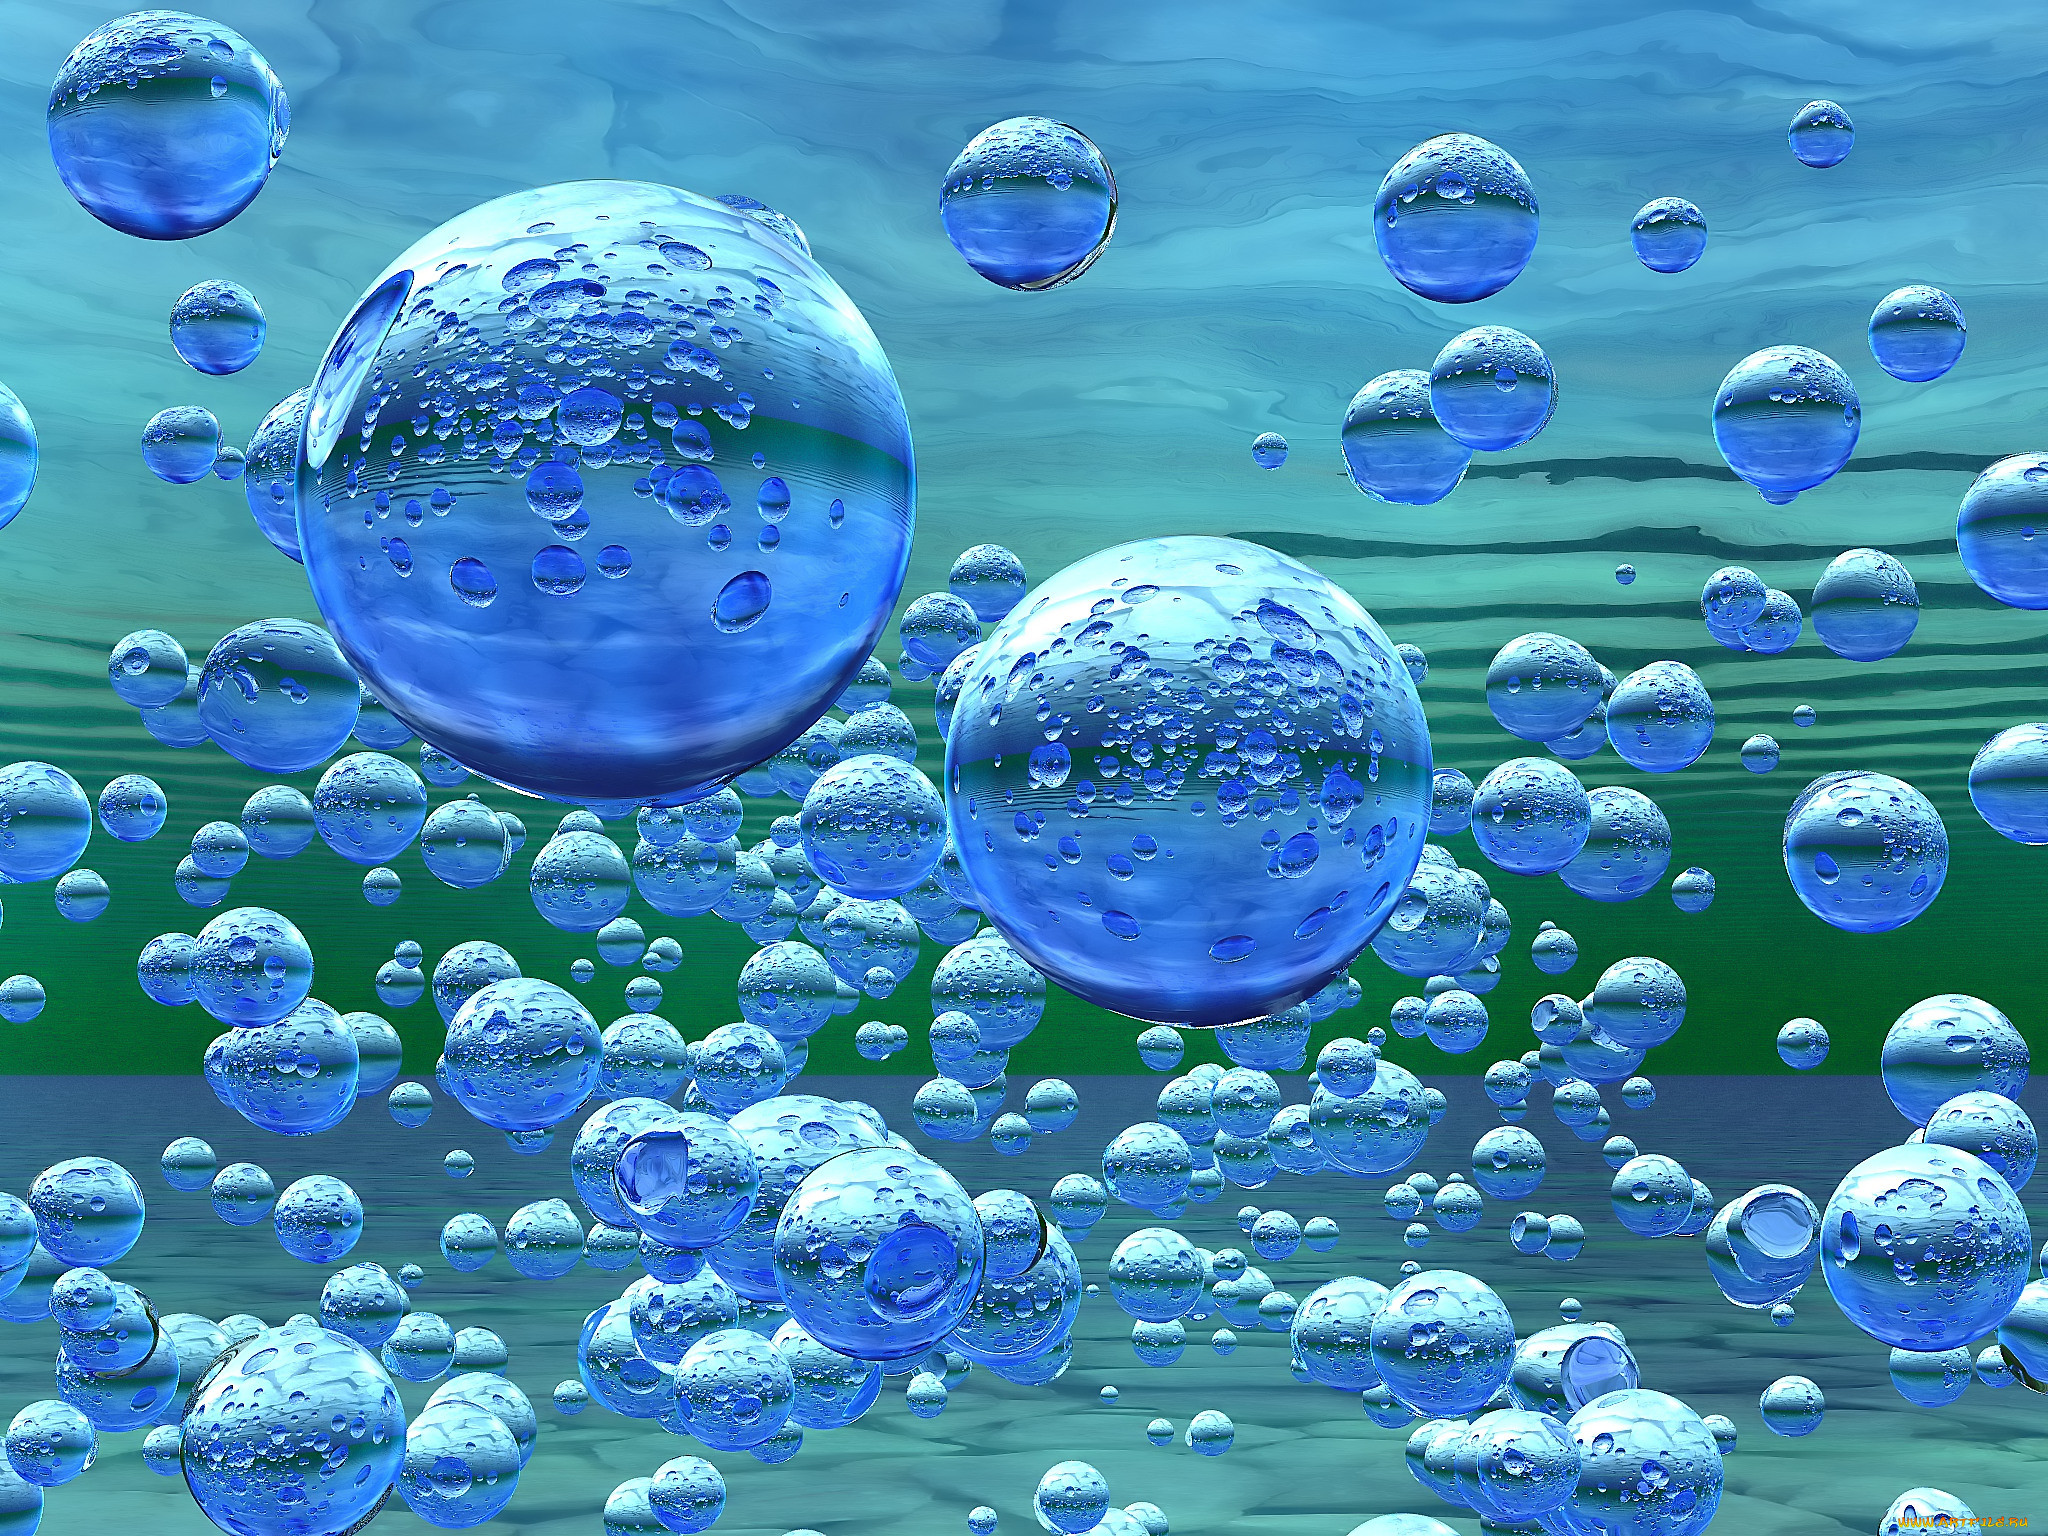 Размер воды в воздухе. Пузырьки в воде. Водяной пузырь. Пузыри воздуха в воде. Воздушные пузыри.